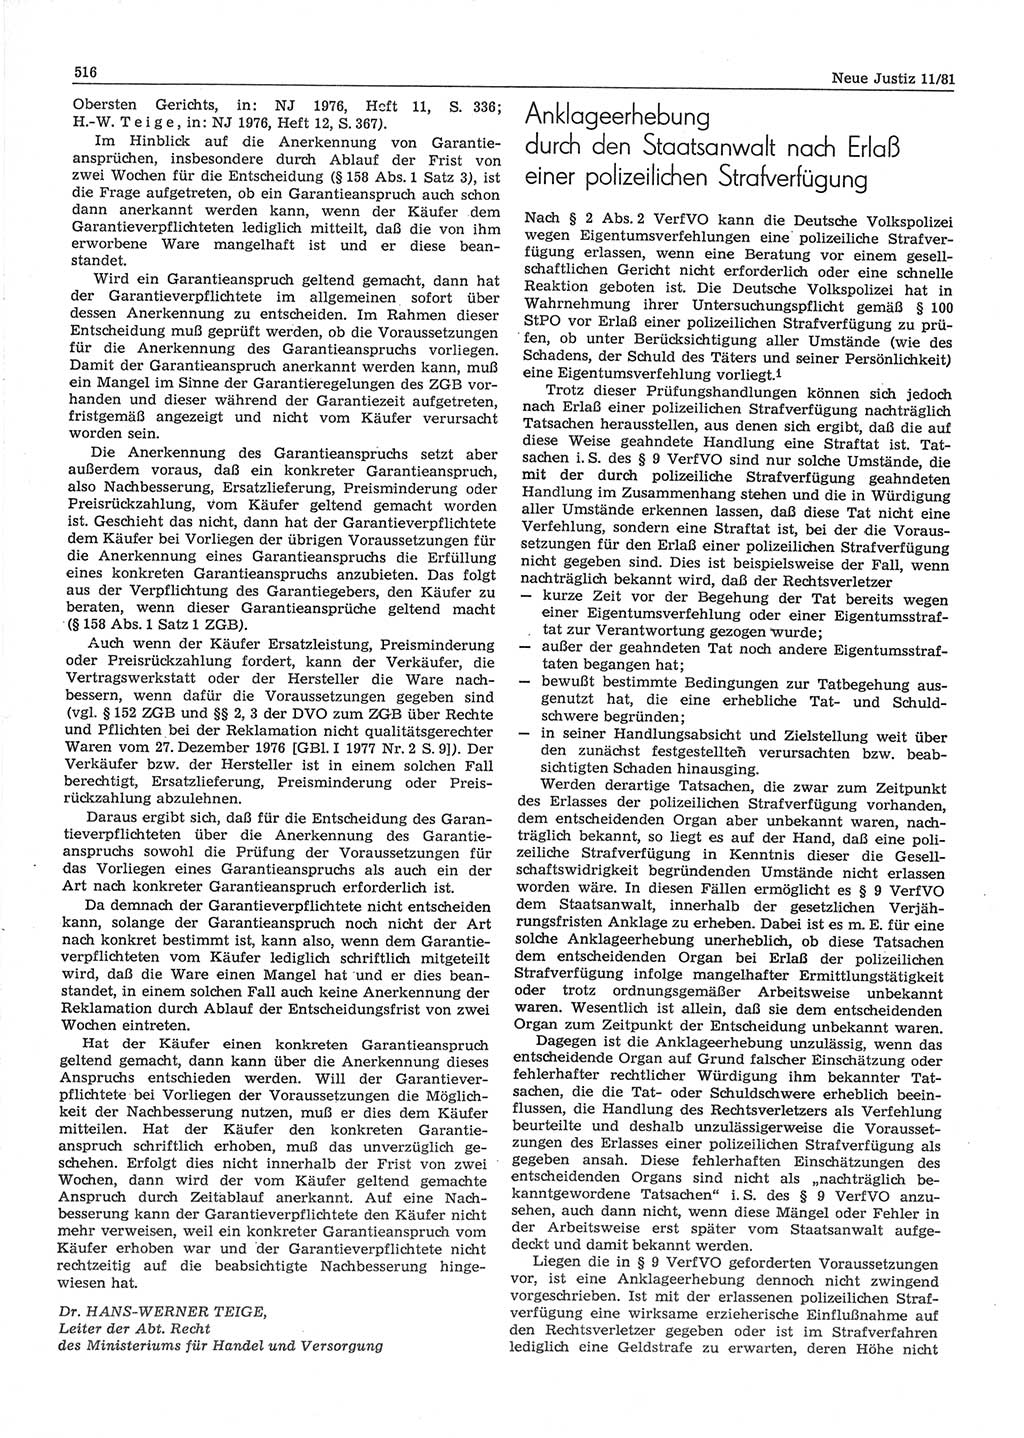 Neue Justiz (NJ), Zeitschrift für sozialistisches Recht und Gesetzlichkeit [Deutsche Demokratische Republik (DDR)], 35. Jahrgang 1981, Seite 516 (NJ DDR 1981, S. 516)